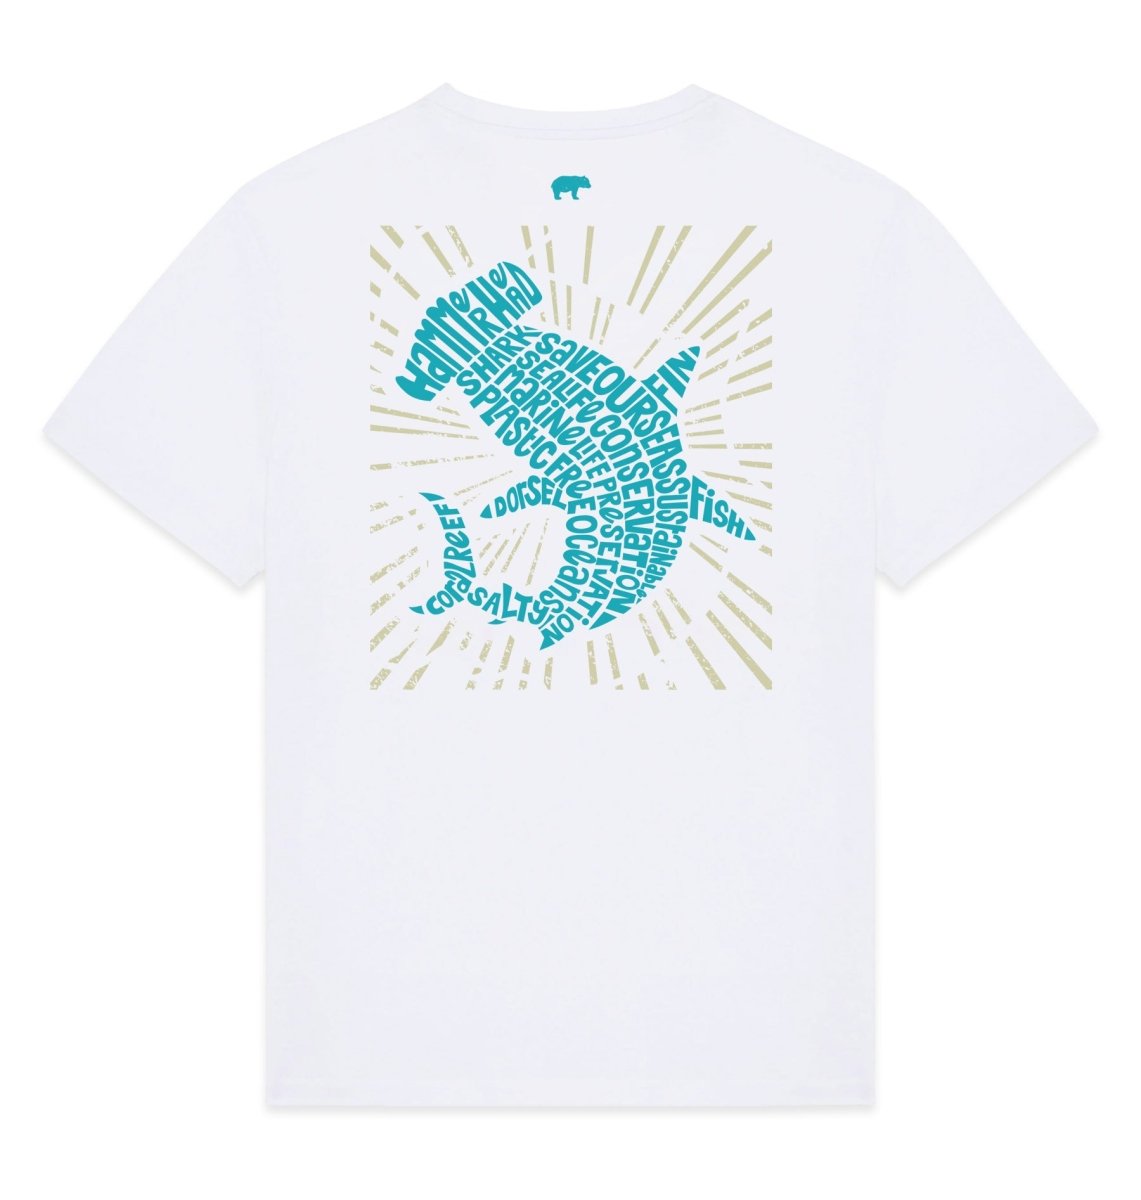 Hammerhead Shark Mens T-shirt - Blue Panda